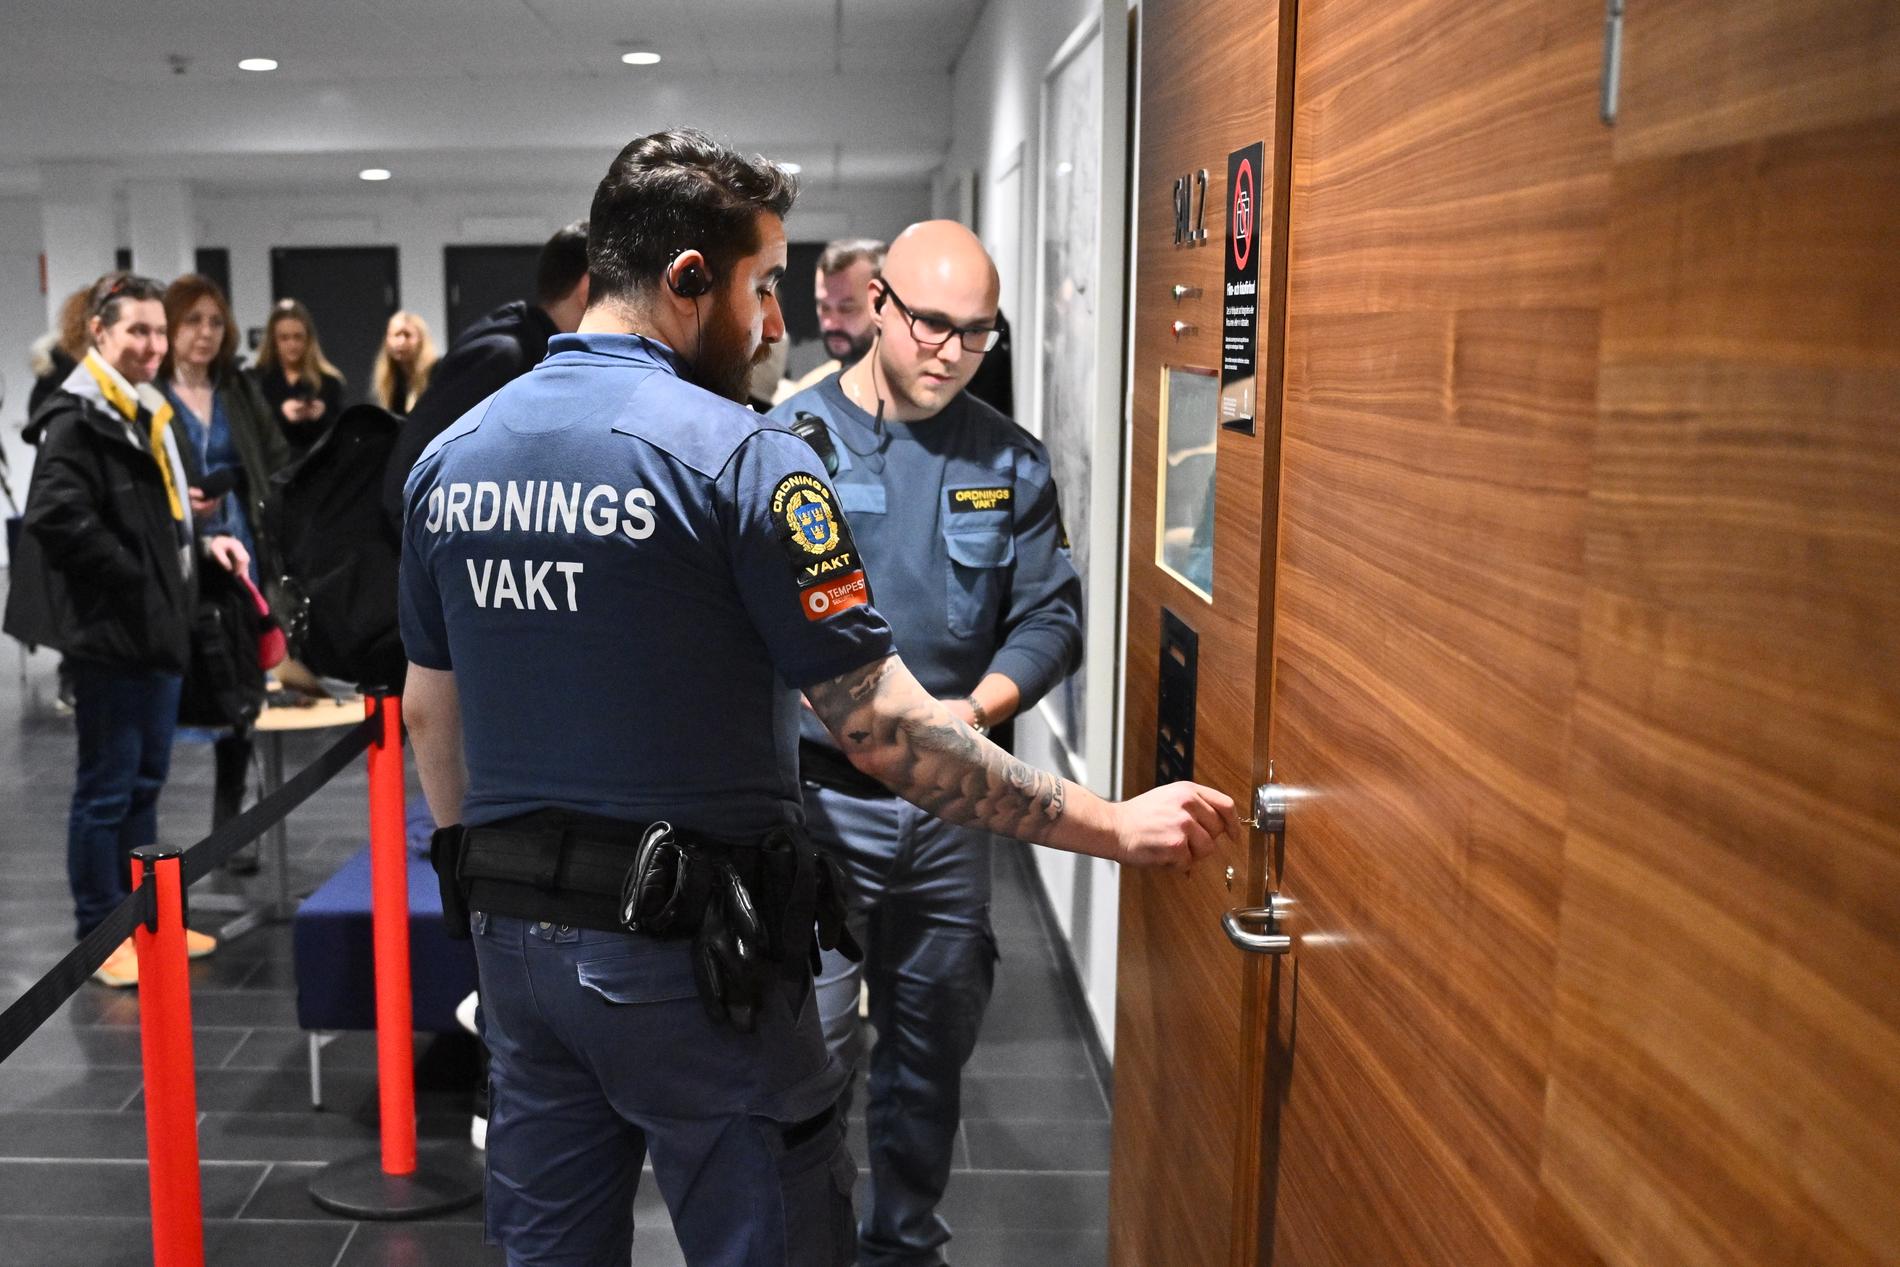 Rättegången för mordet hölls i Attunda tingsrätt i Sollentuna. Bild från första förhandlingsdagen.